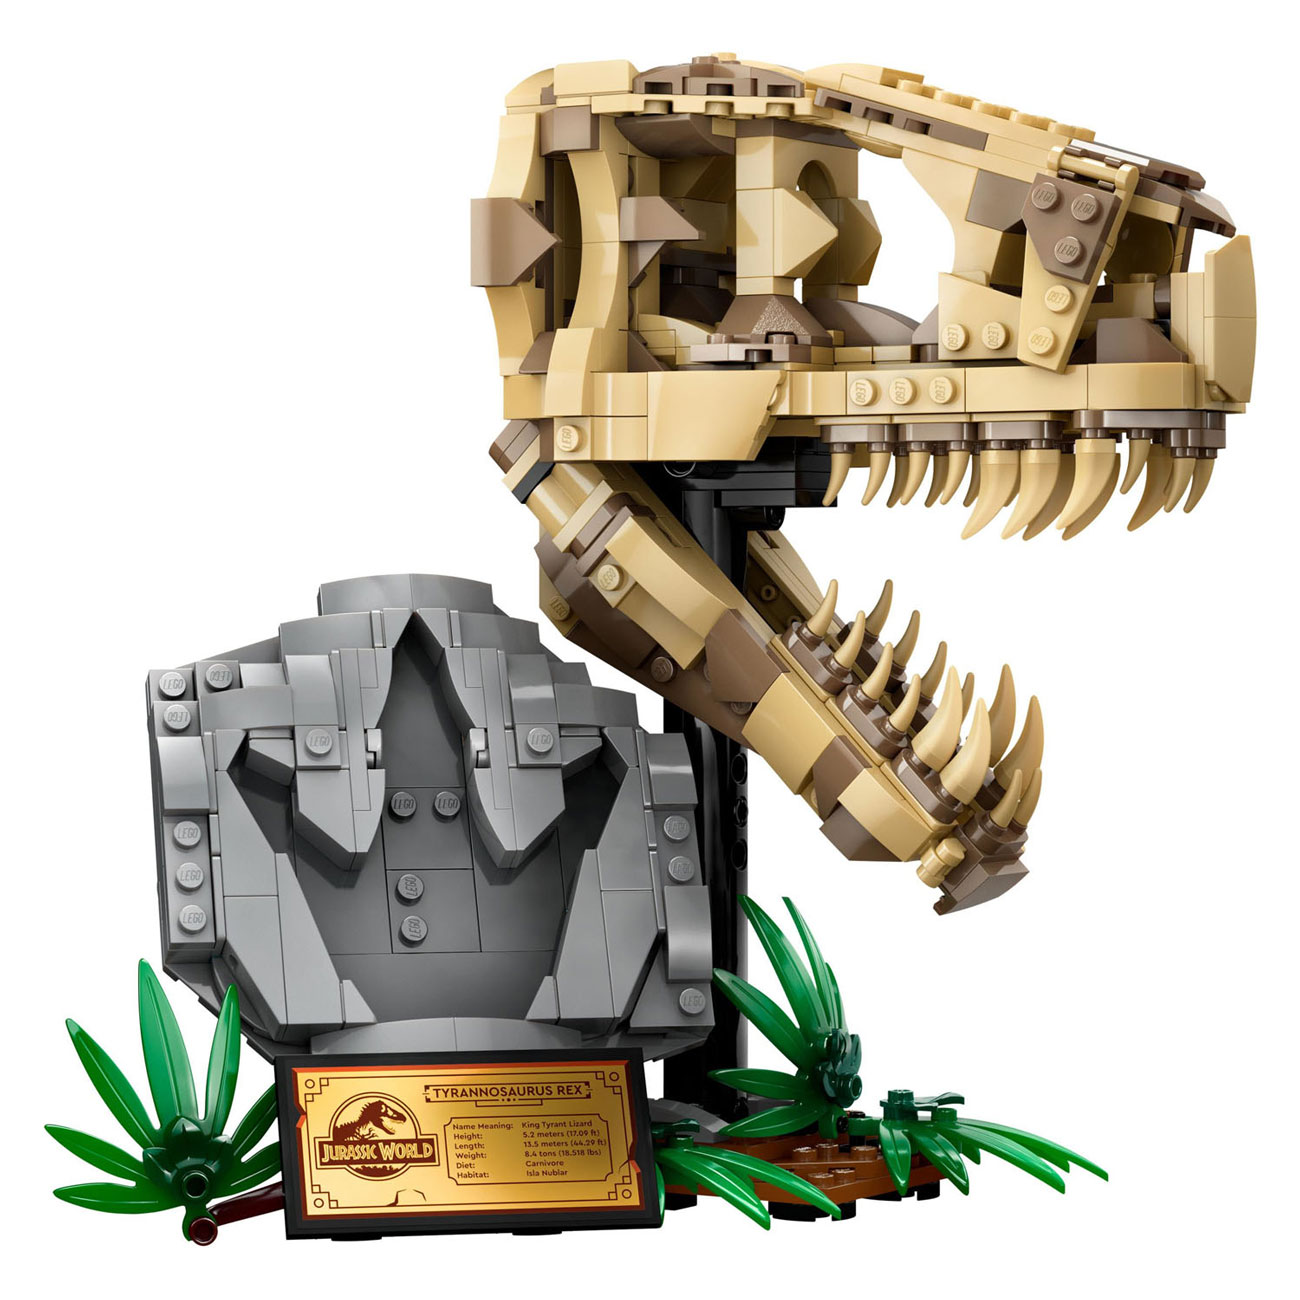 LEGO Jurassic World 76964 Dinosaurusfossielen: T-Rex Schedel